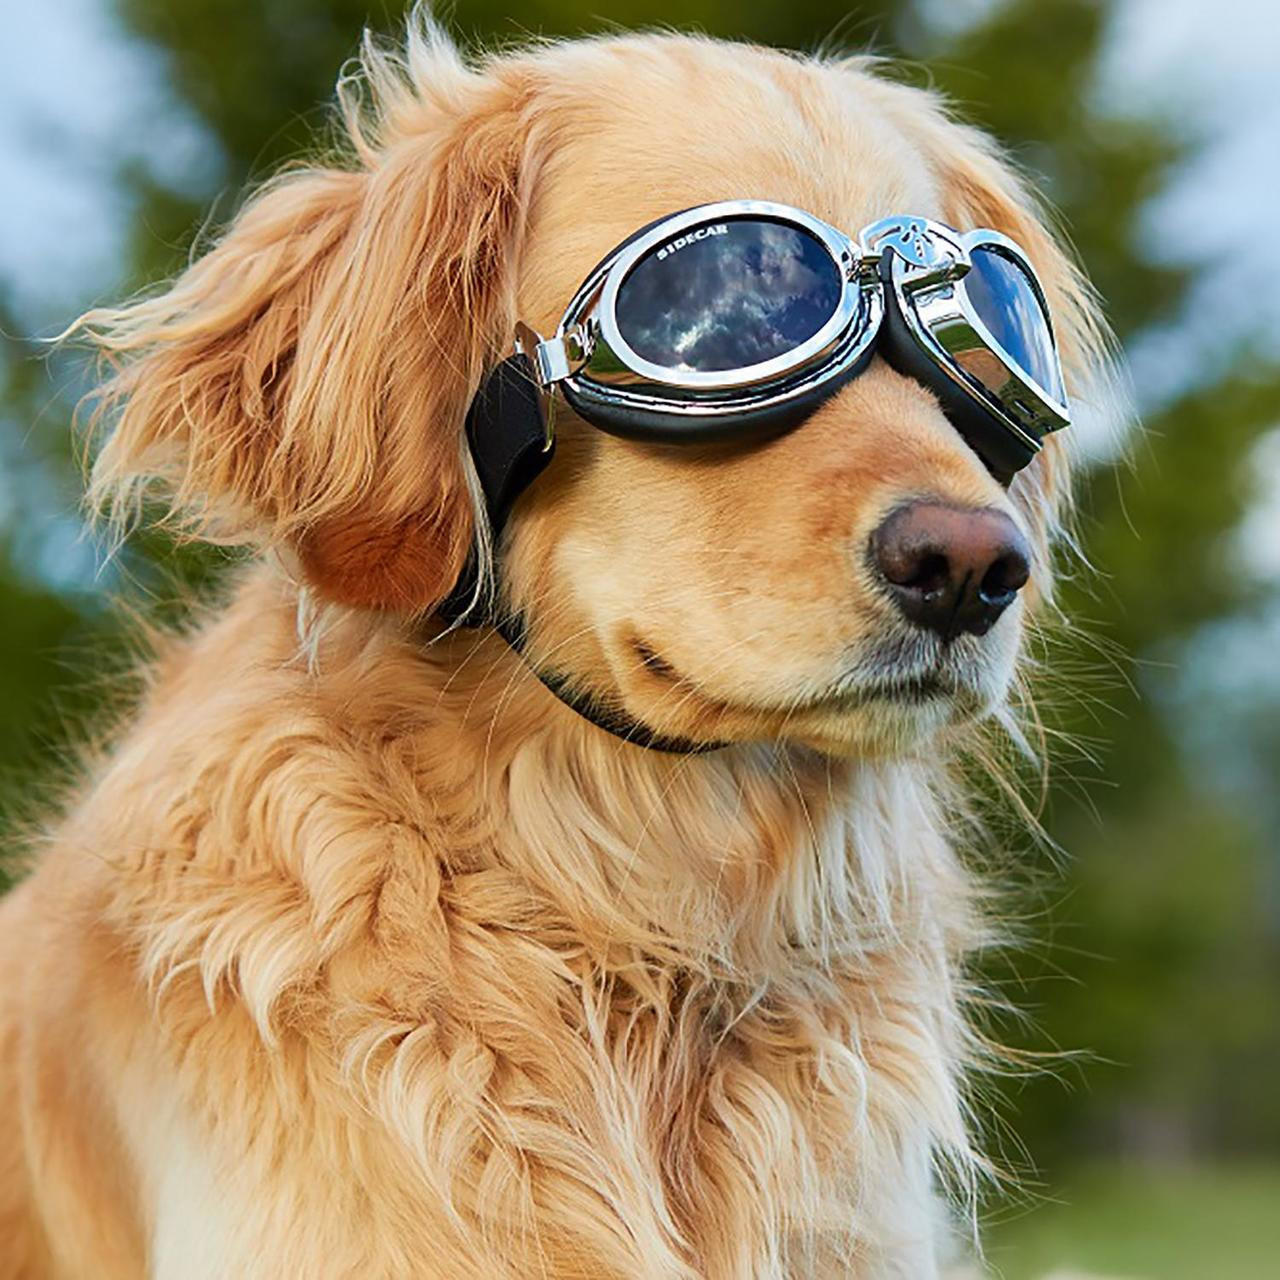 How do I measure my dog for sunglasses?